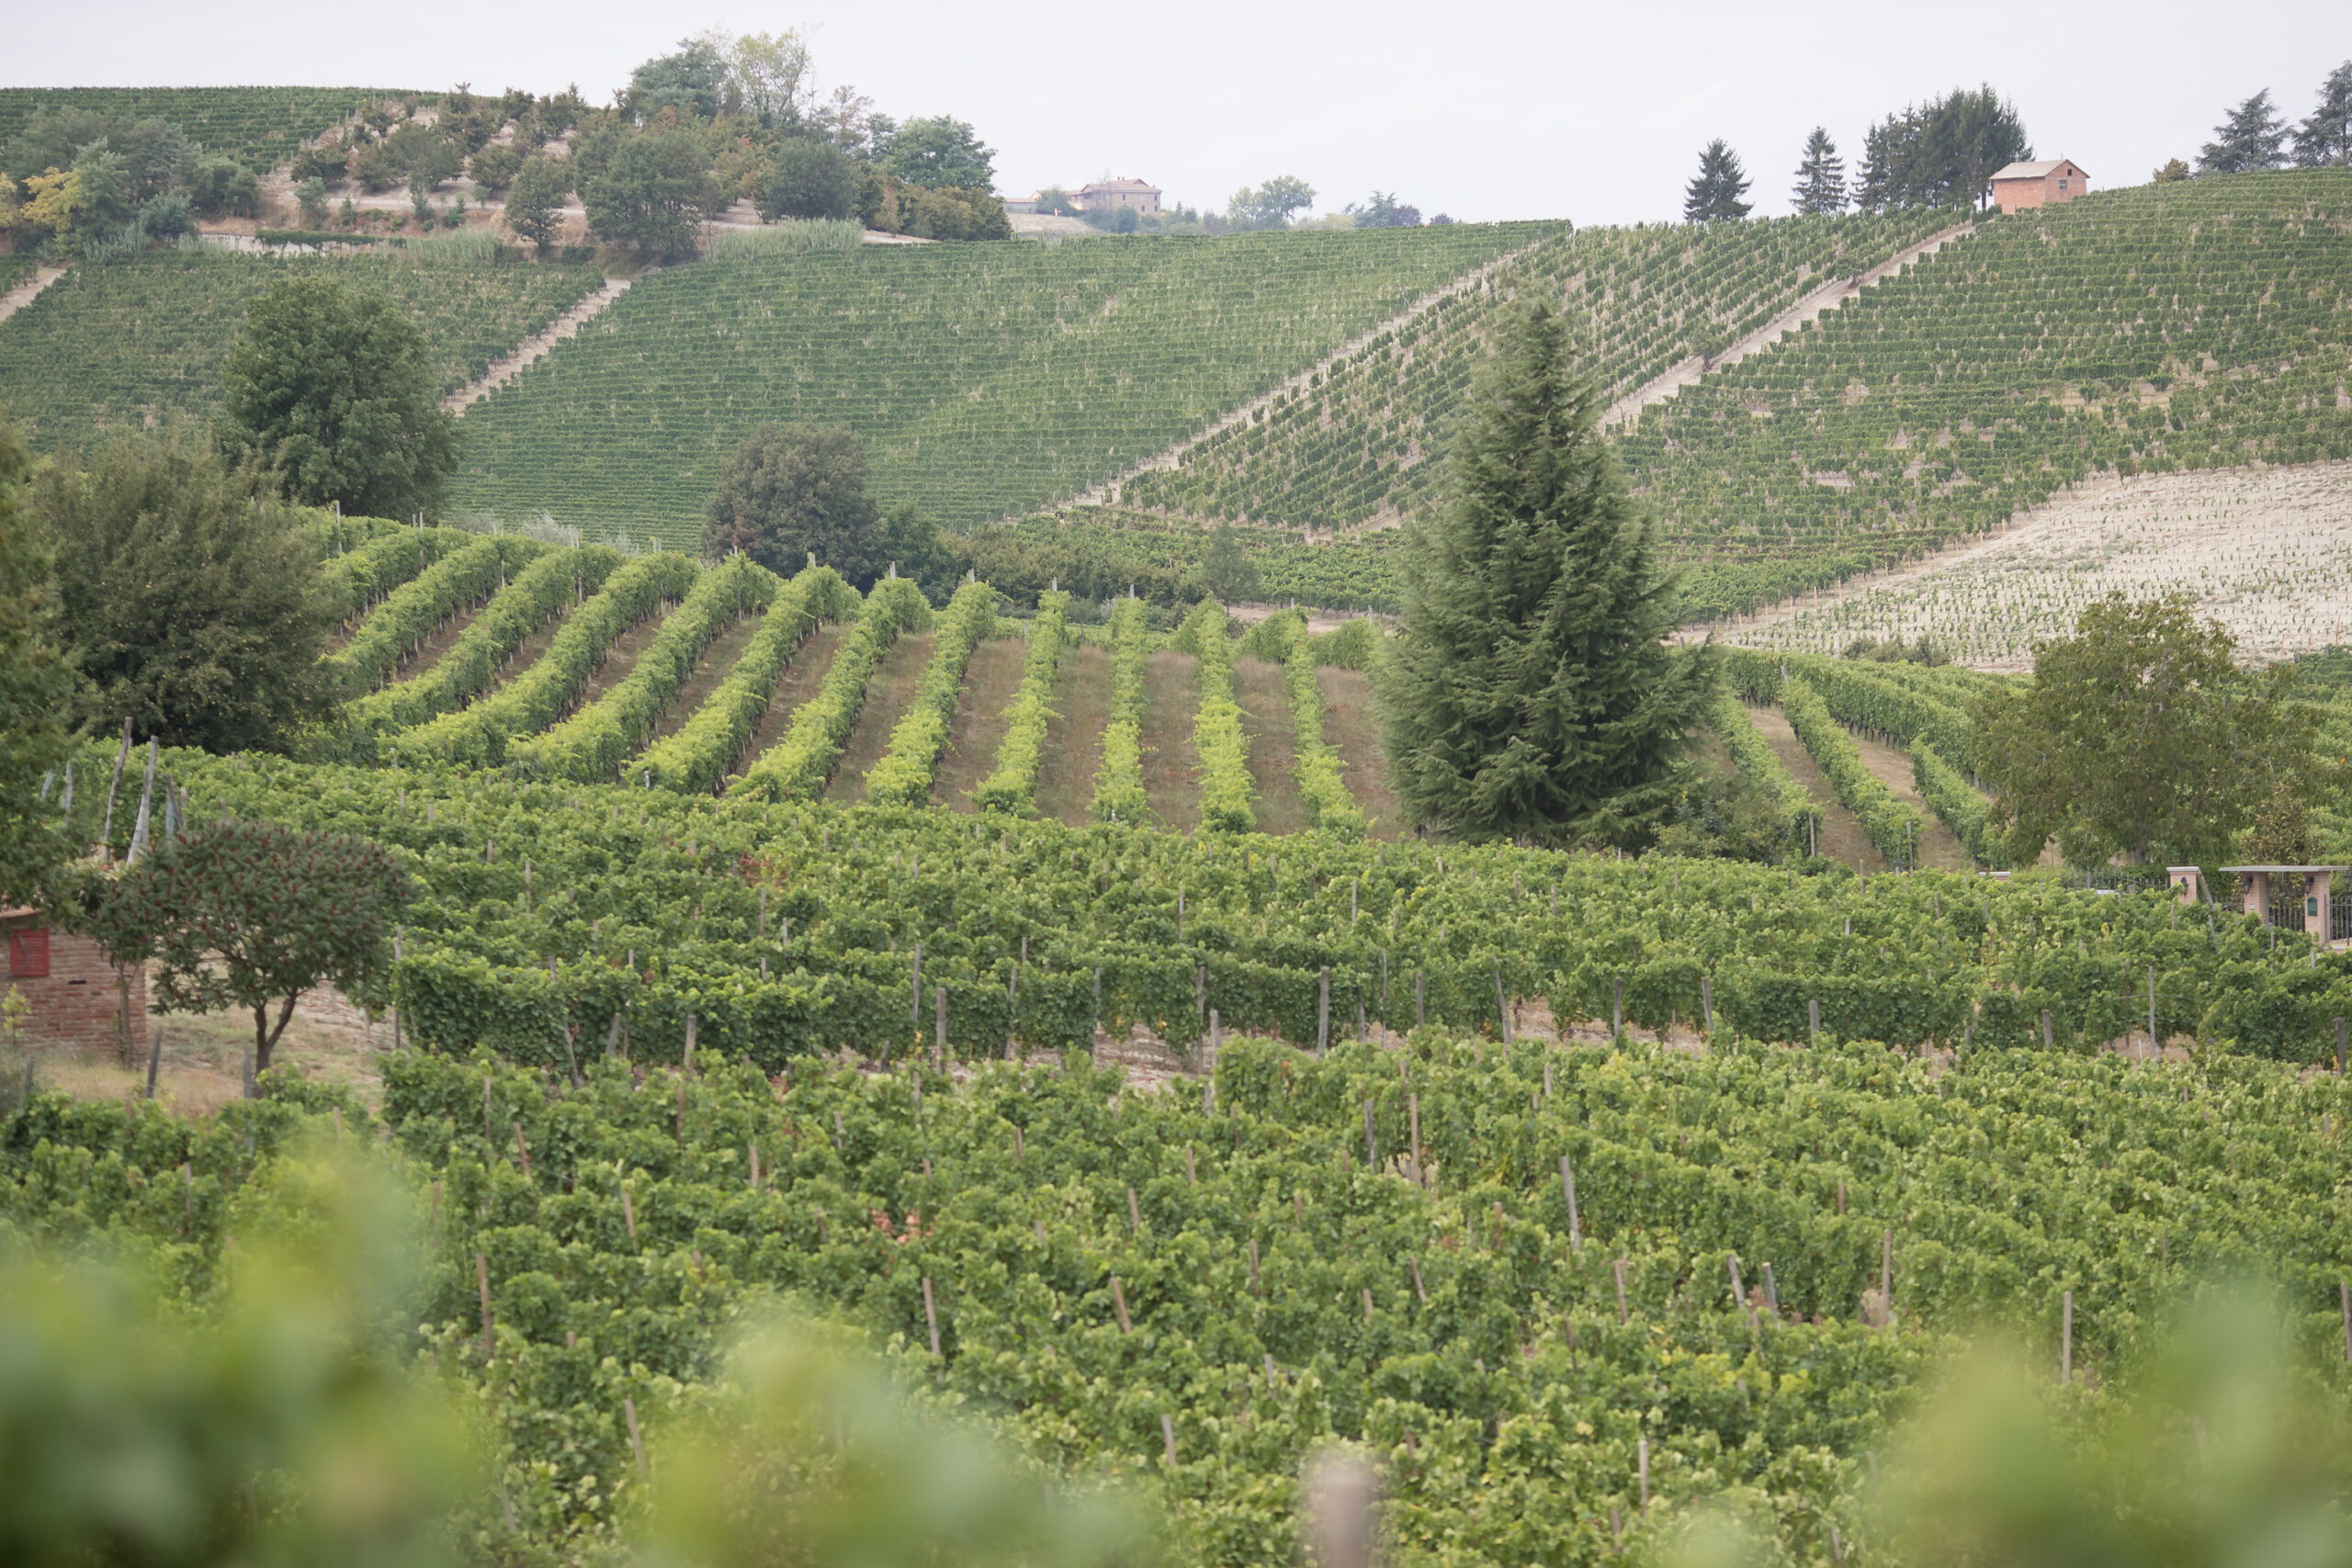 Le caratteristiche climatiche e geografiche dei territori astigiani hanno favorito il proliferare della produzione di uva Moscato Bianco.